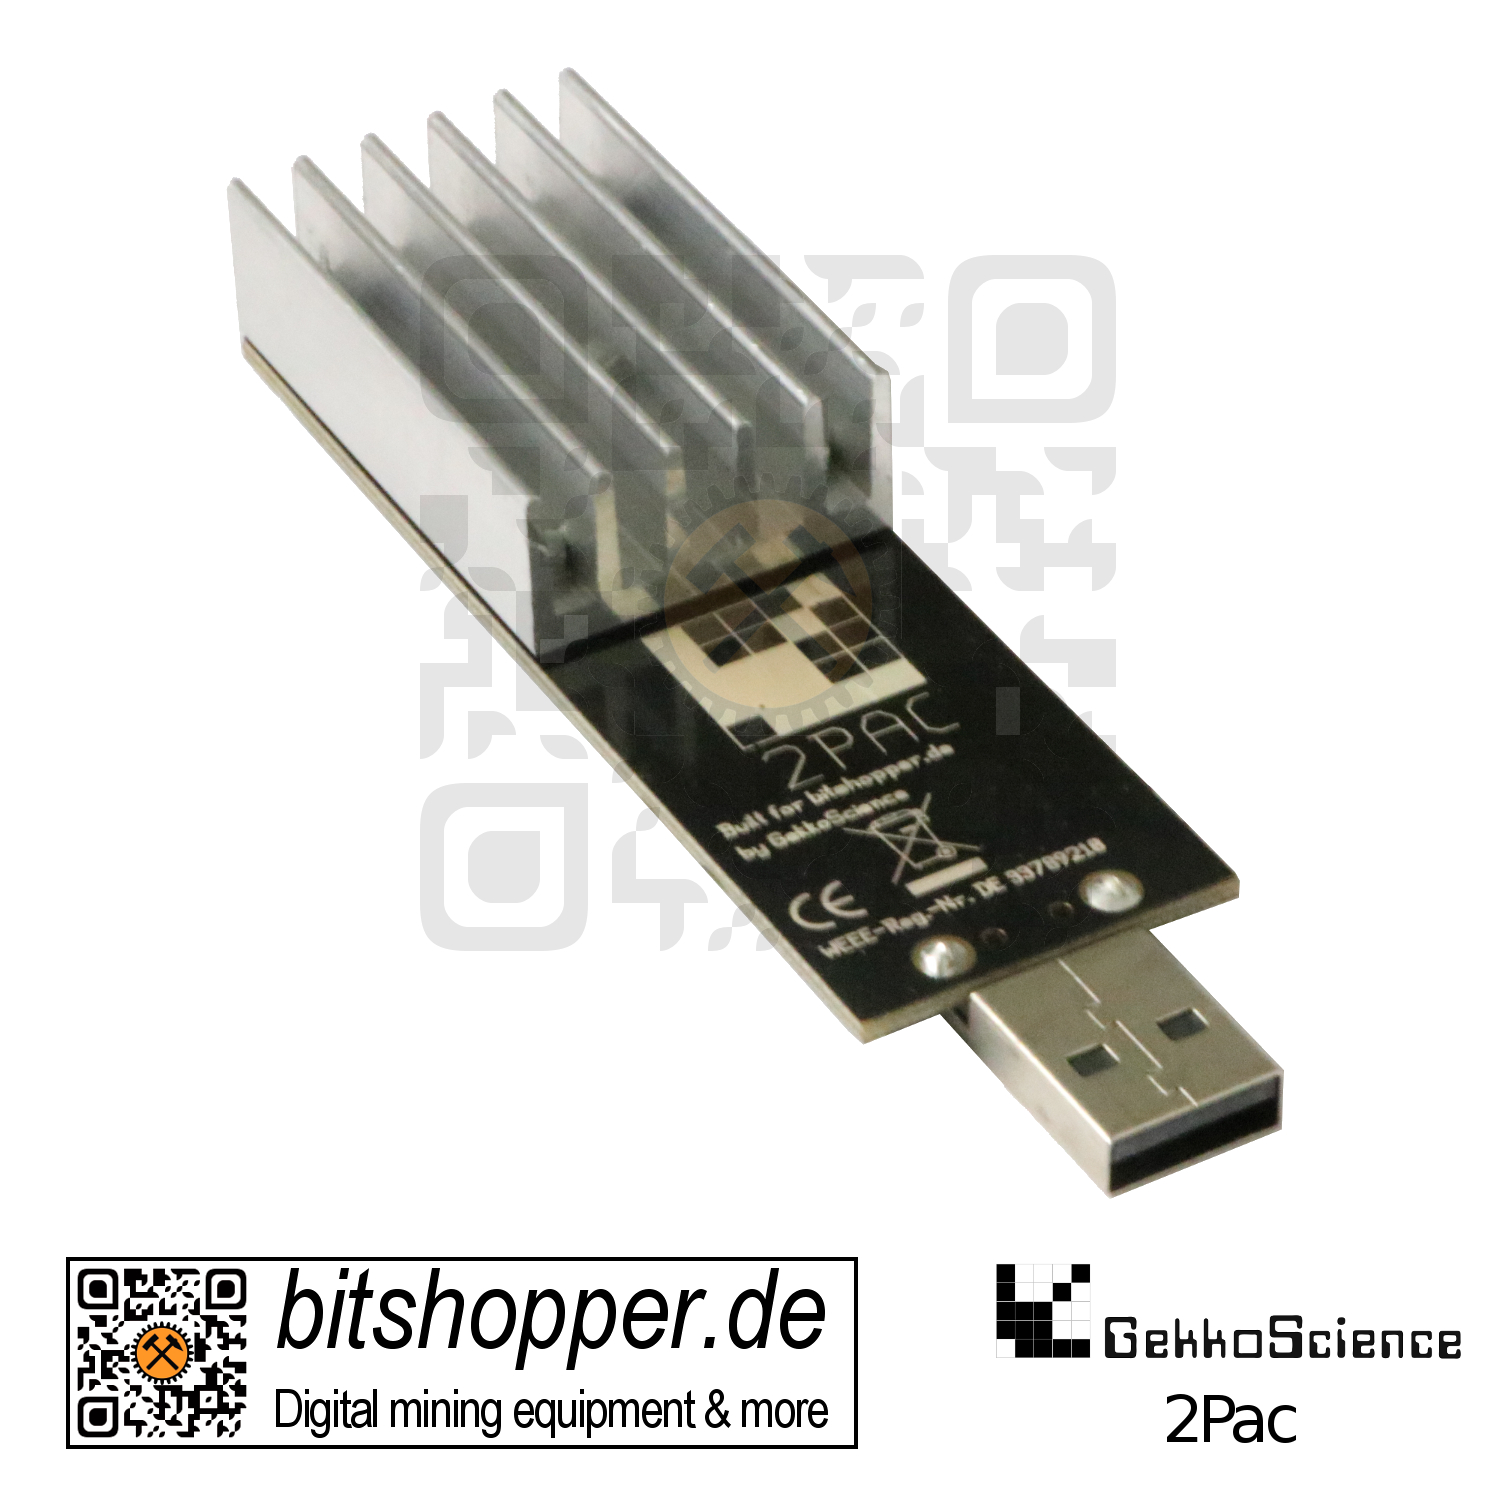 USB-Stick Miner GekkoScience NewPac GH/s